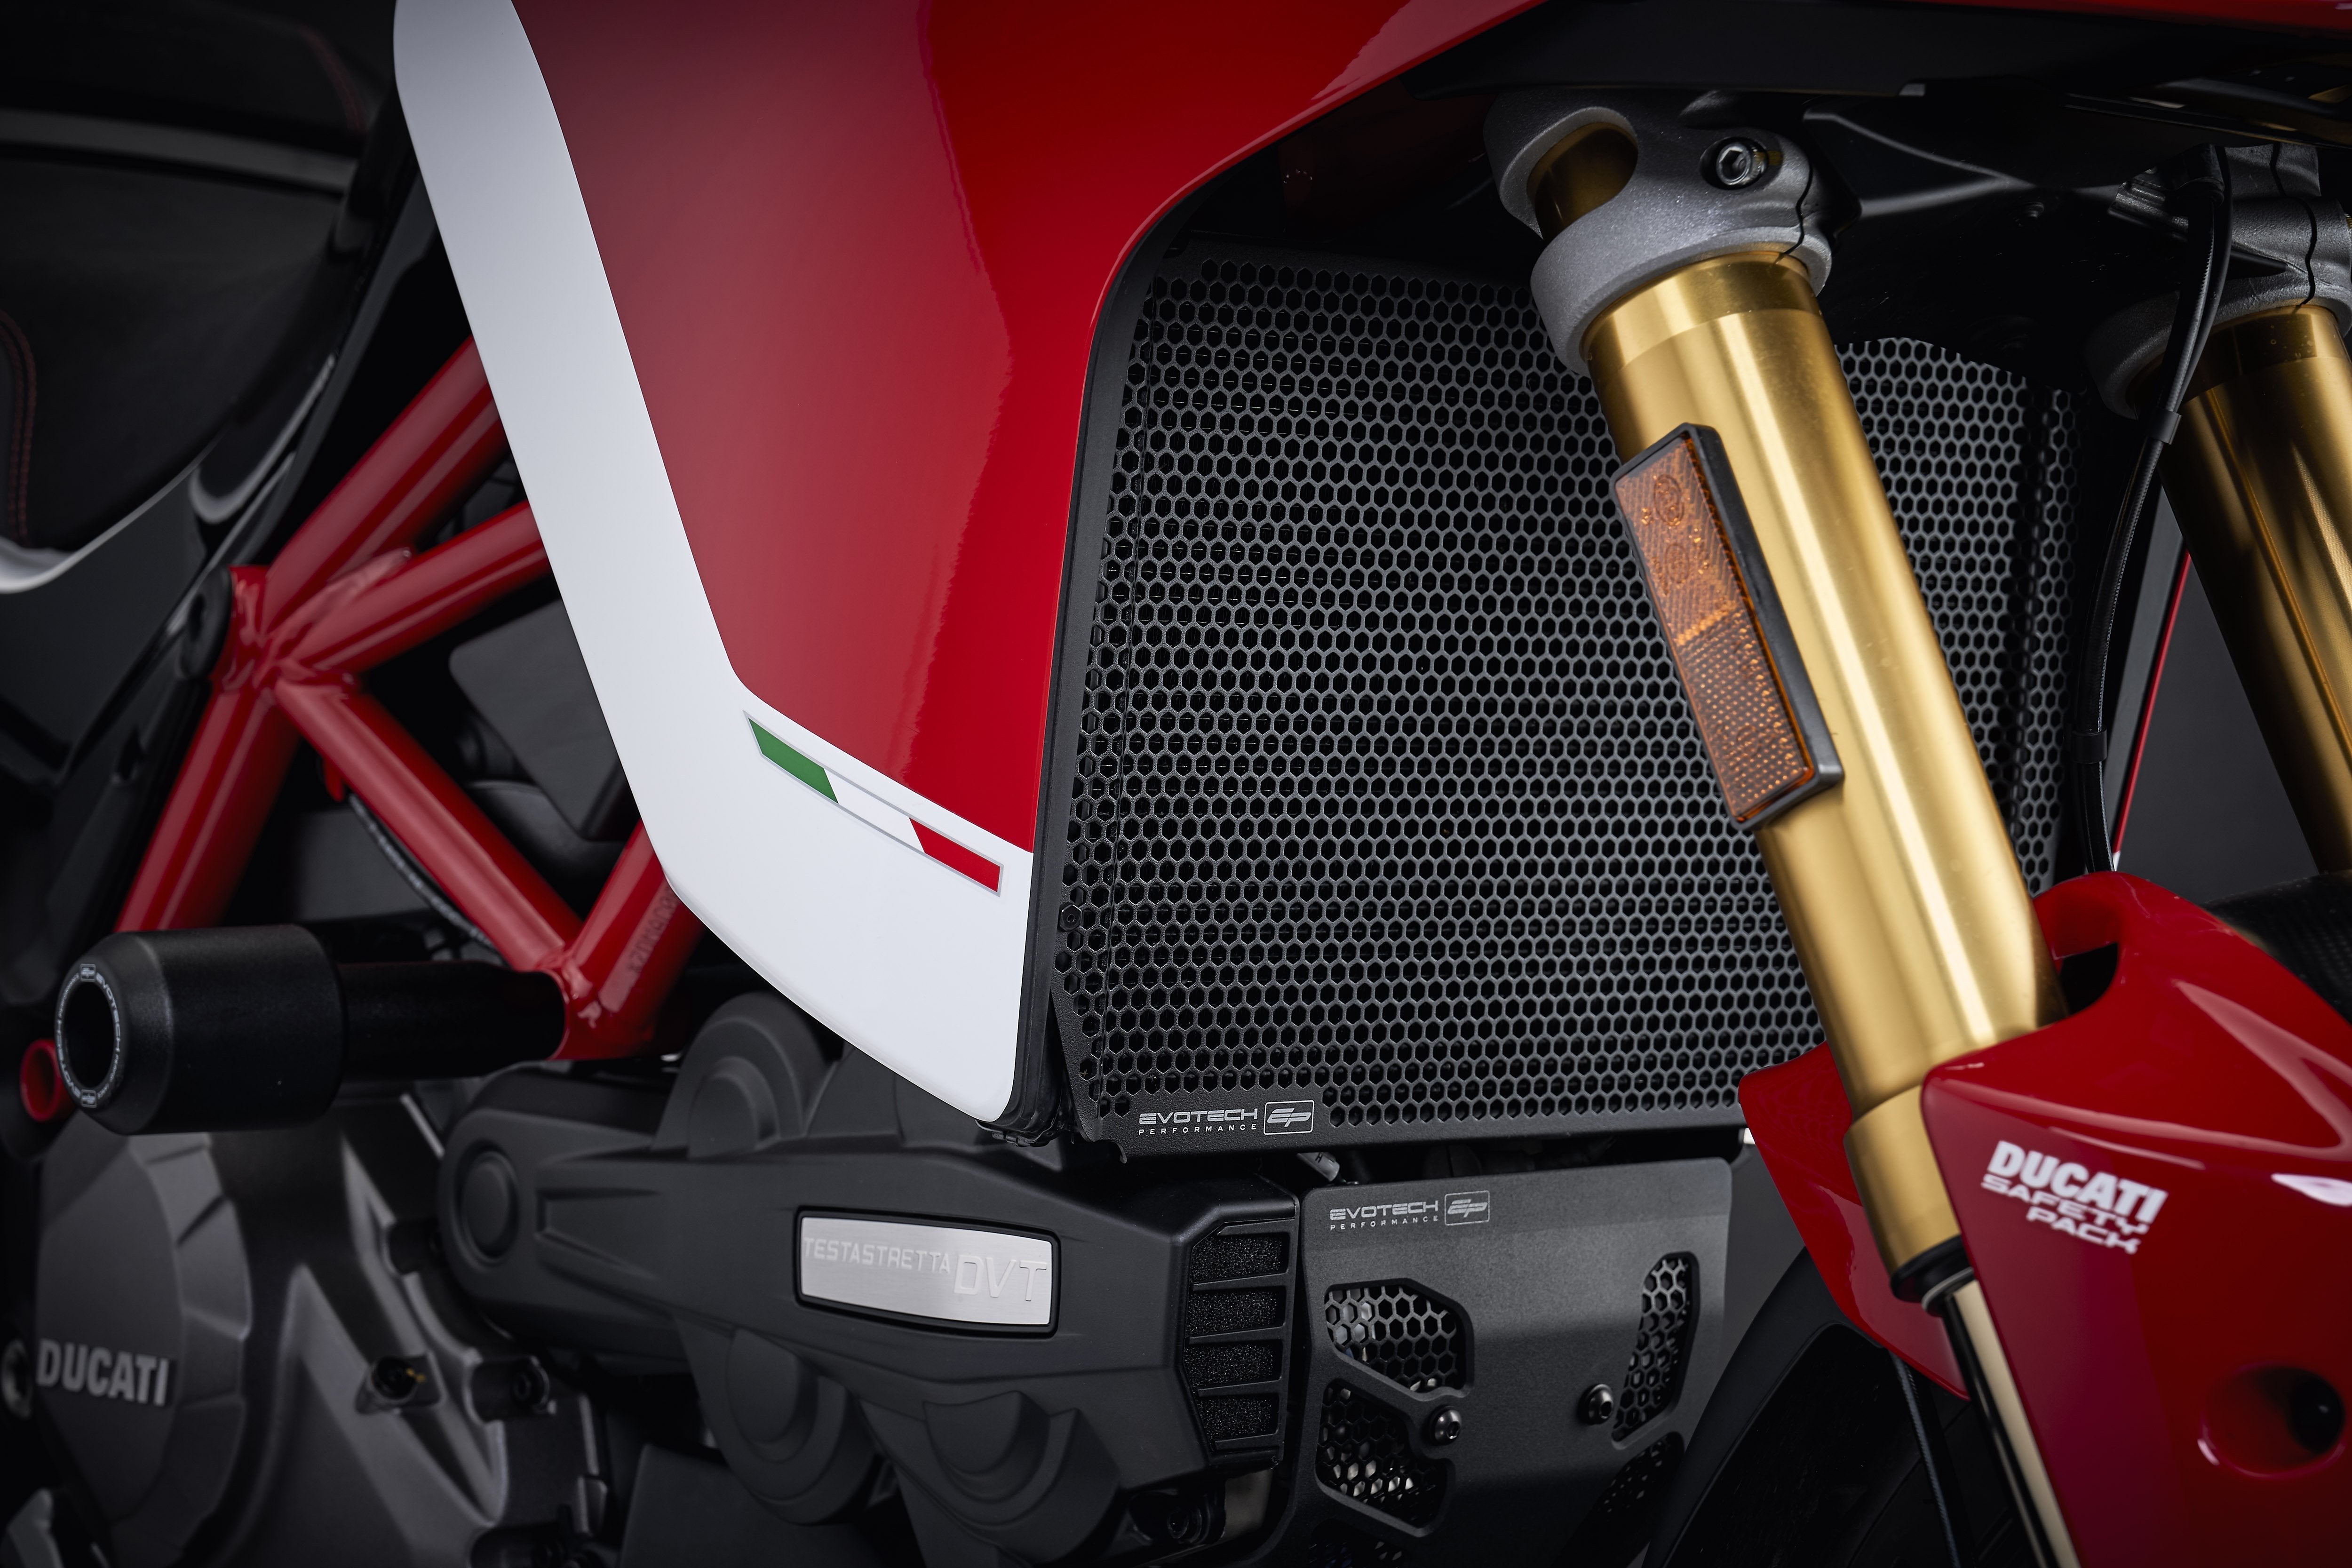 EP Ducati Multistrada 1200 S D air Radiator Guard 2015 - 2017